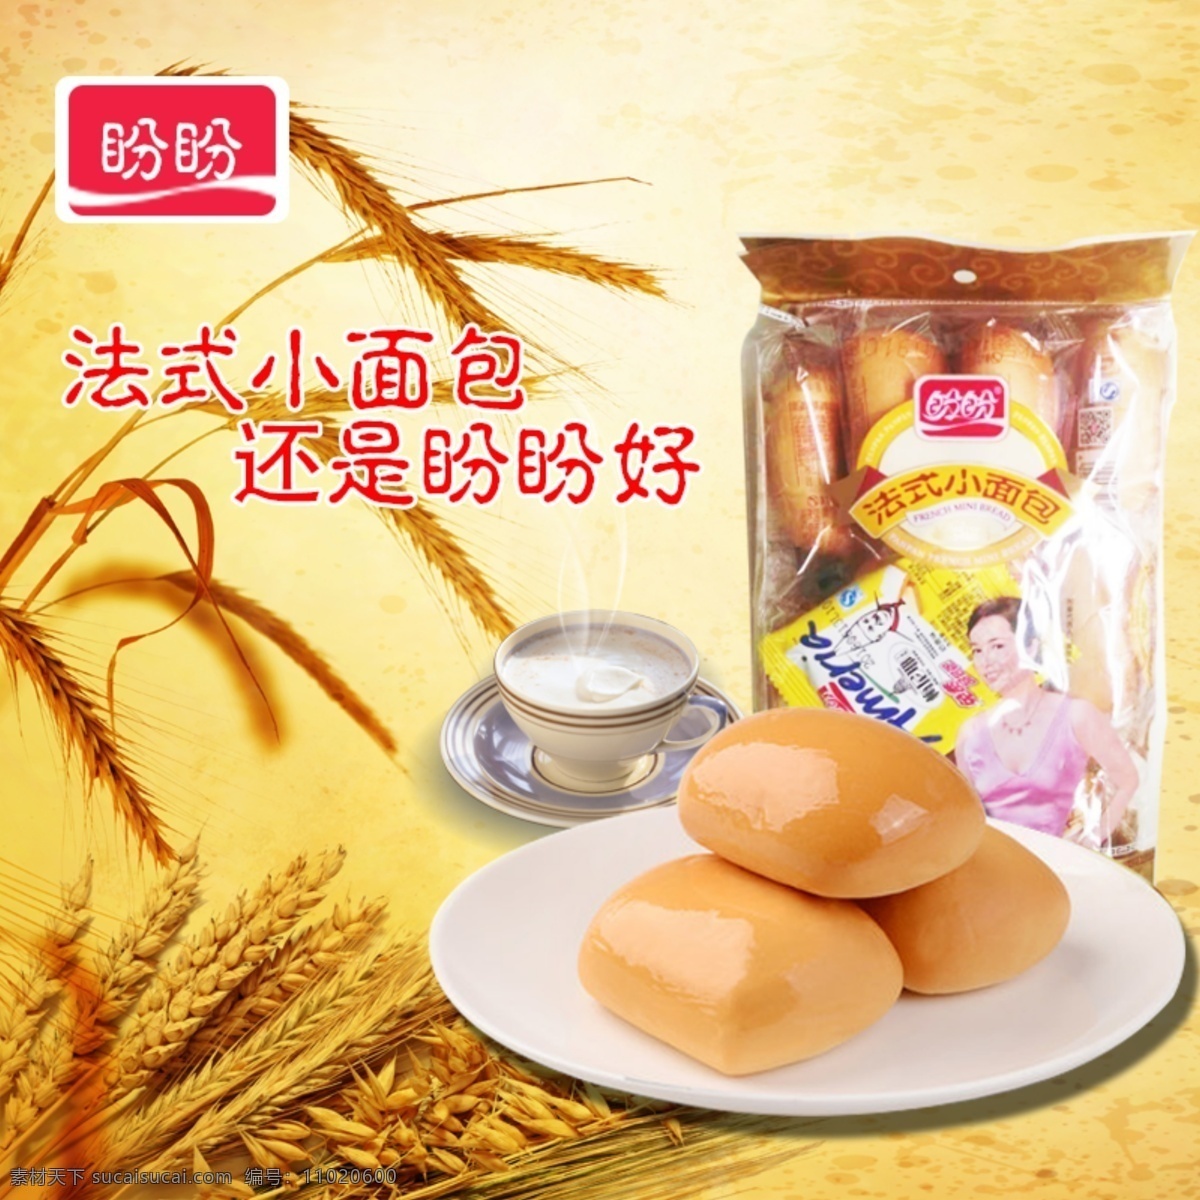 面包系 法式小面包 黄色 小麦 奶茶 盼盼食品